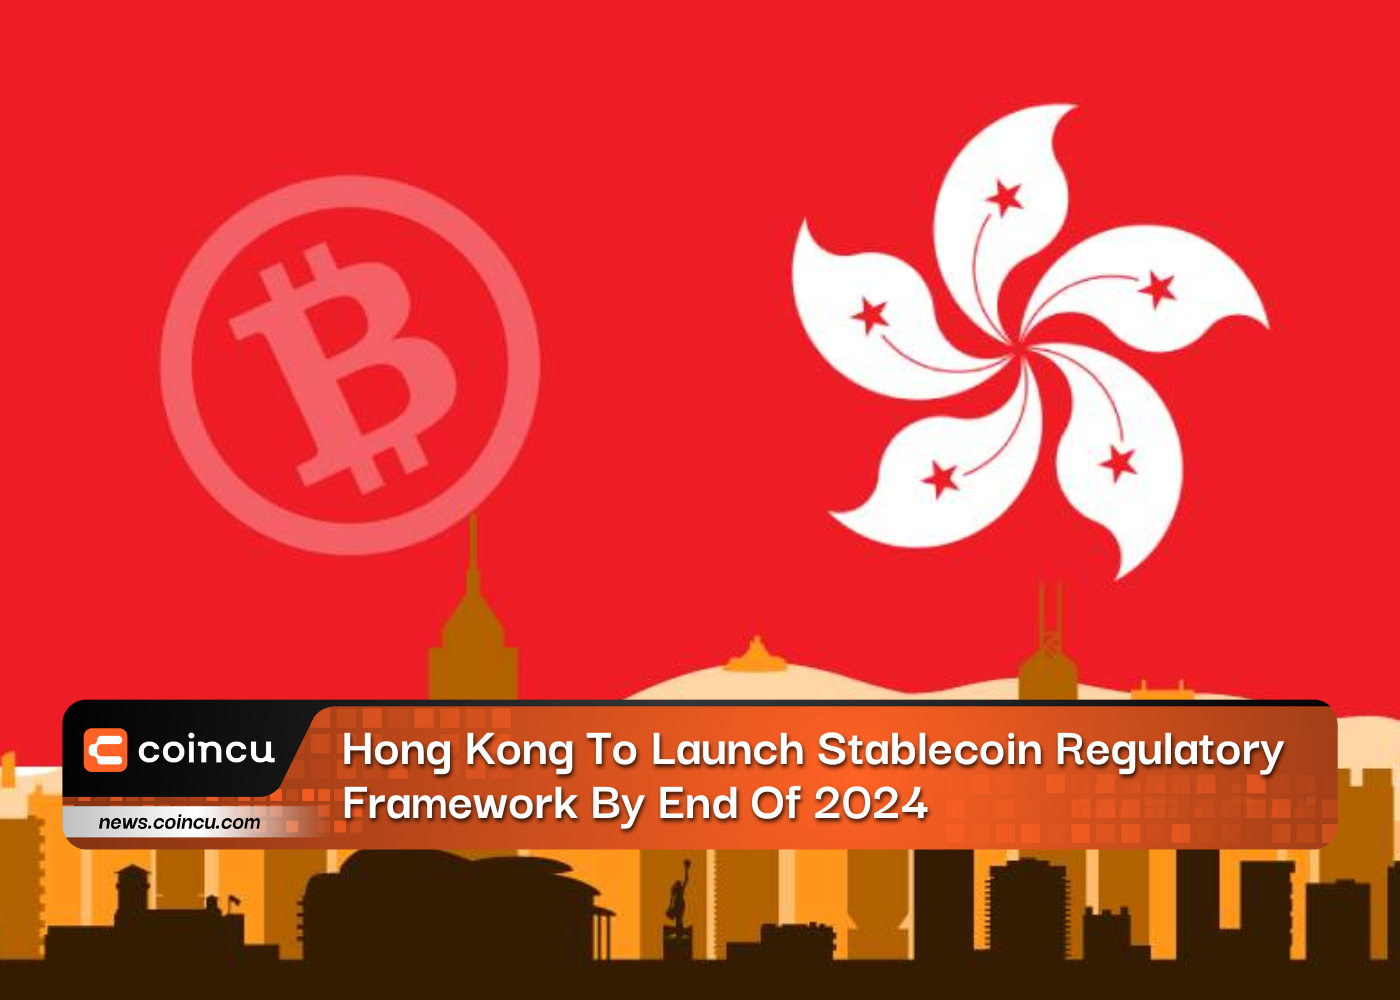 Hongkong wird bis Ende 2024 einen Regulierungsrahmen für Stablecoins einführen